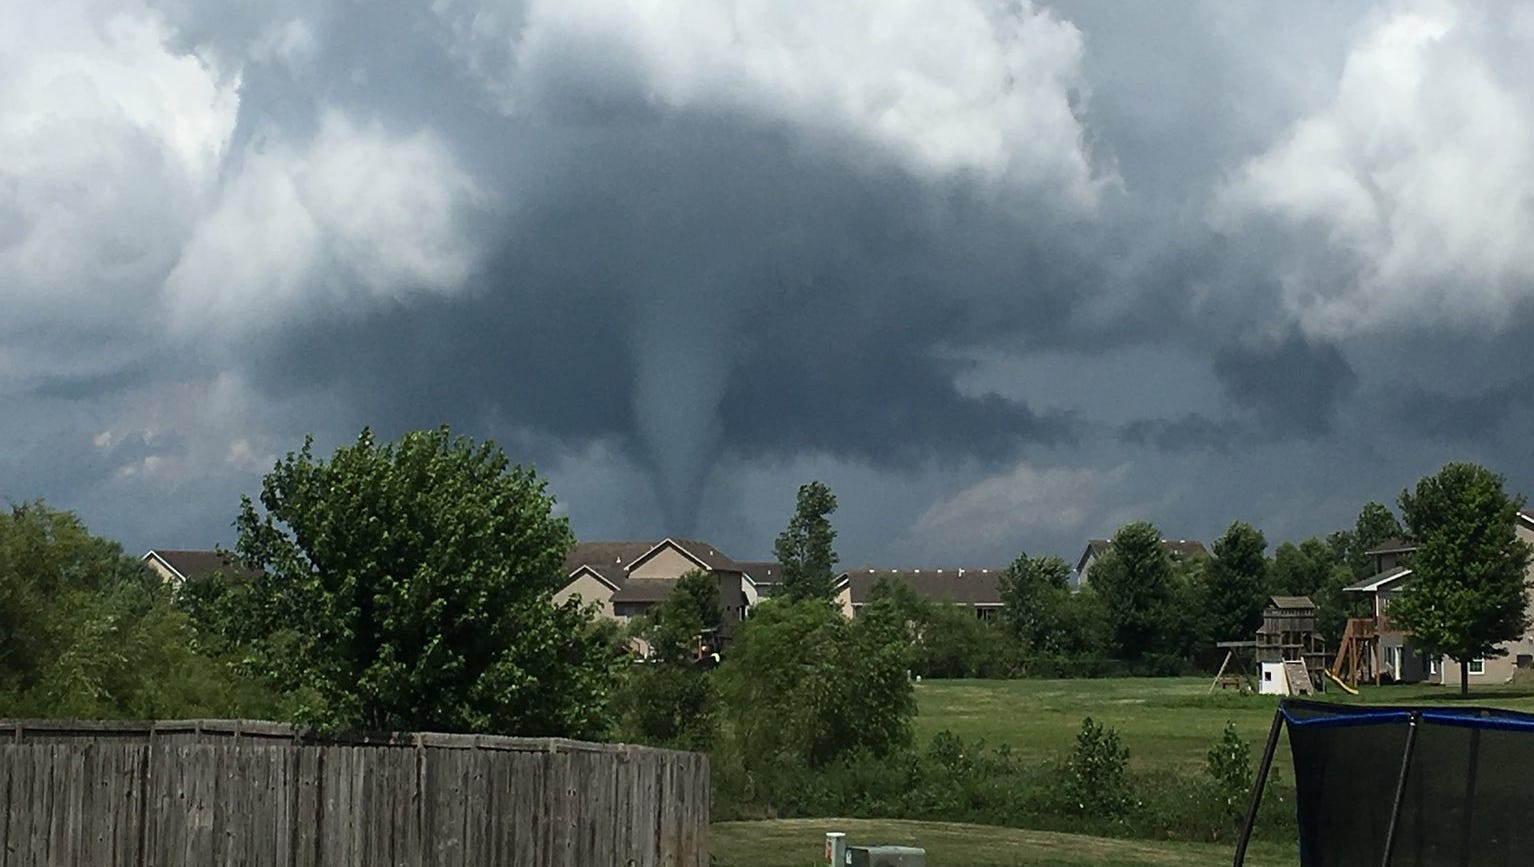 Iowa tornado database How to find wind speeds, damage, deaths